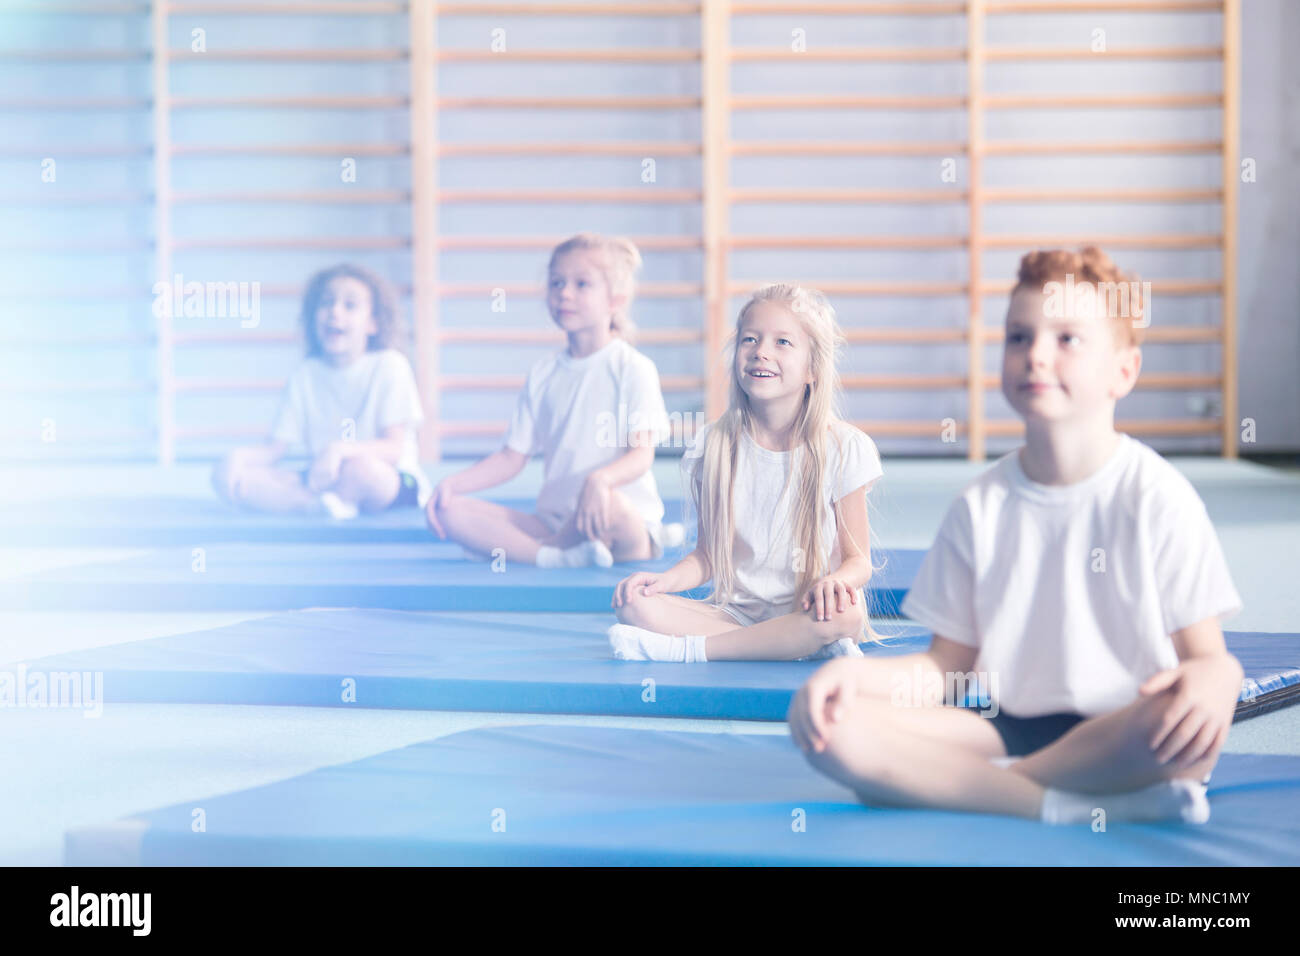 Neugierig und erstaunt, die Kinder in der Schule Sportswear sitzen in einer Turnhalle Innenraum während der außerschulischen Yoga class und bis in die Richtung einer flar suchen Stockfoto